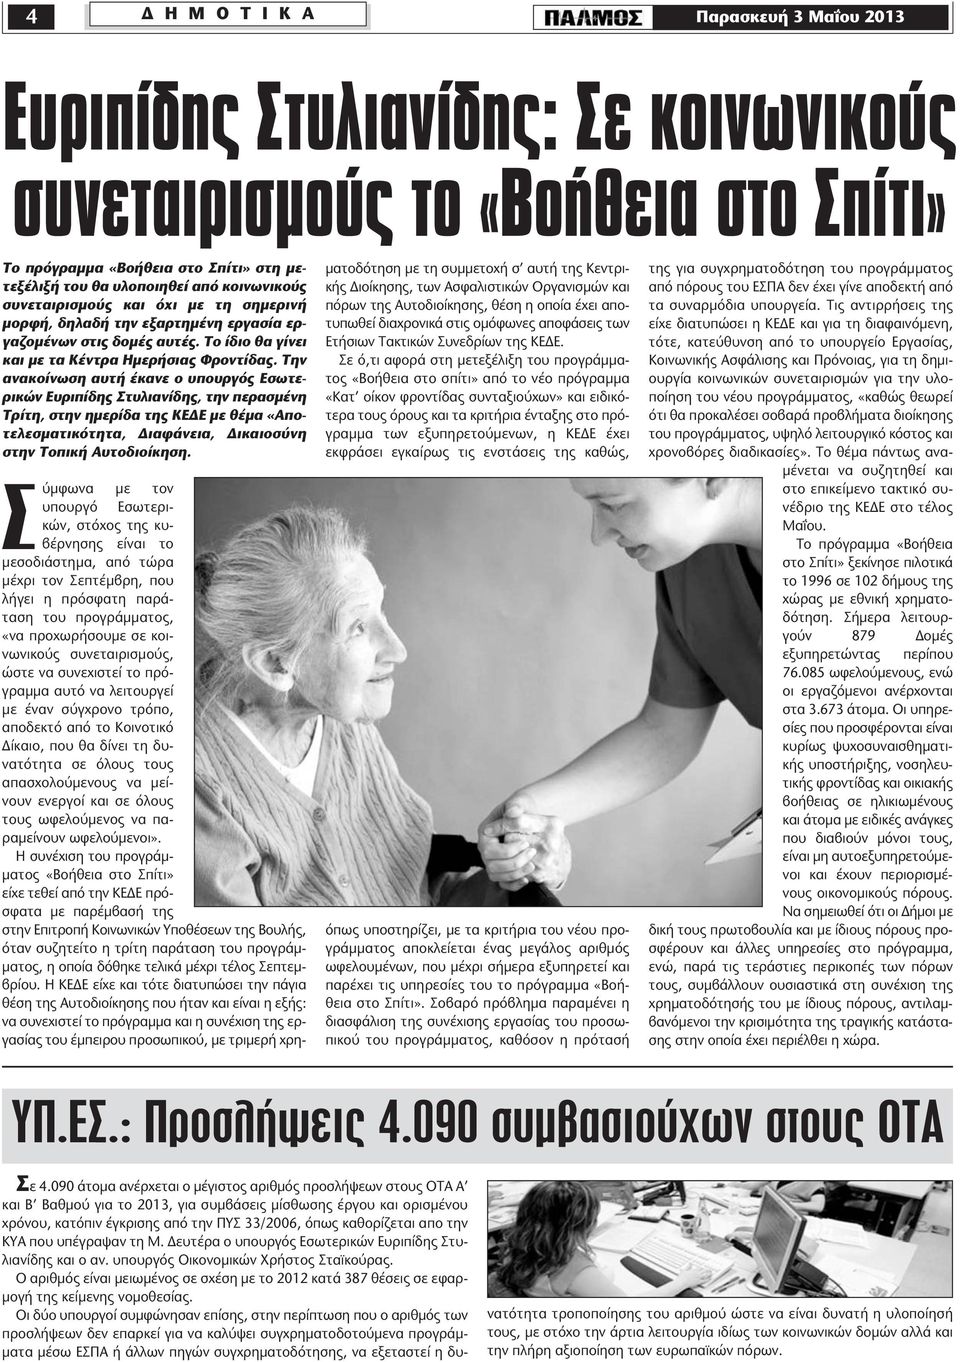 Την ανακοίνωση αυτή έκανε ο υπουργός Εσωτερικών Ευριπίδης Στυλιανίδης, την περασμένη Τρίτη, στην ημερίδα της ΚΕΔΕ με θέμα «Αποτελεσματικότητα, Διαφάνεια, Δικαιοσύνη στην Τοπική Αυτοδιοίκηση.